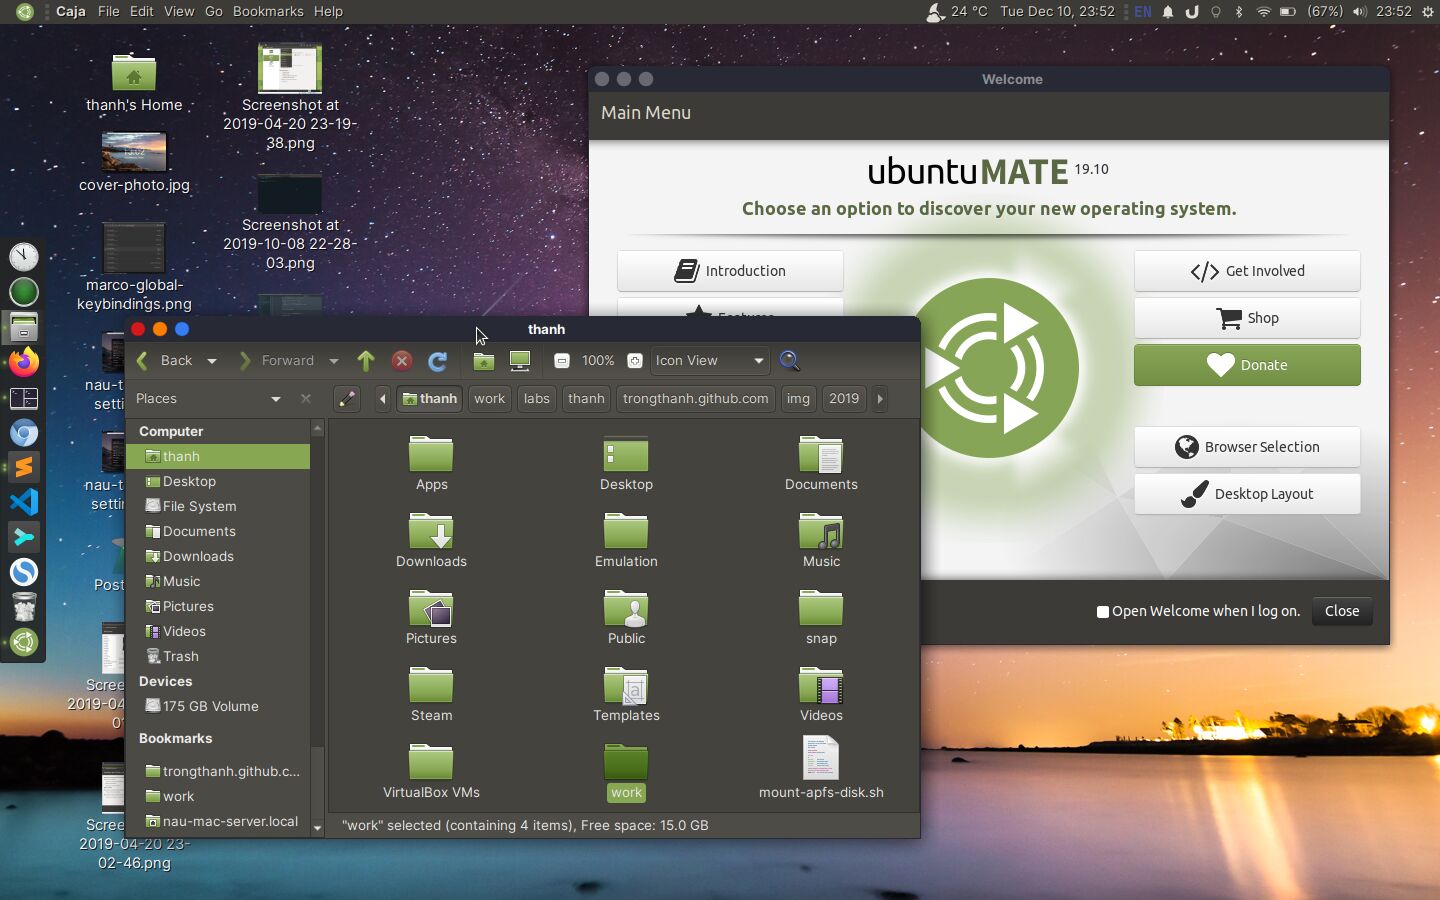 open haard Leggen Voor u Things to do after installing Ubuntu Mate - Int3ractive